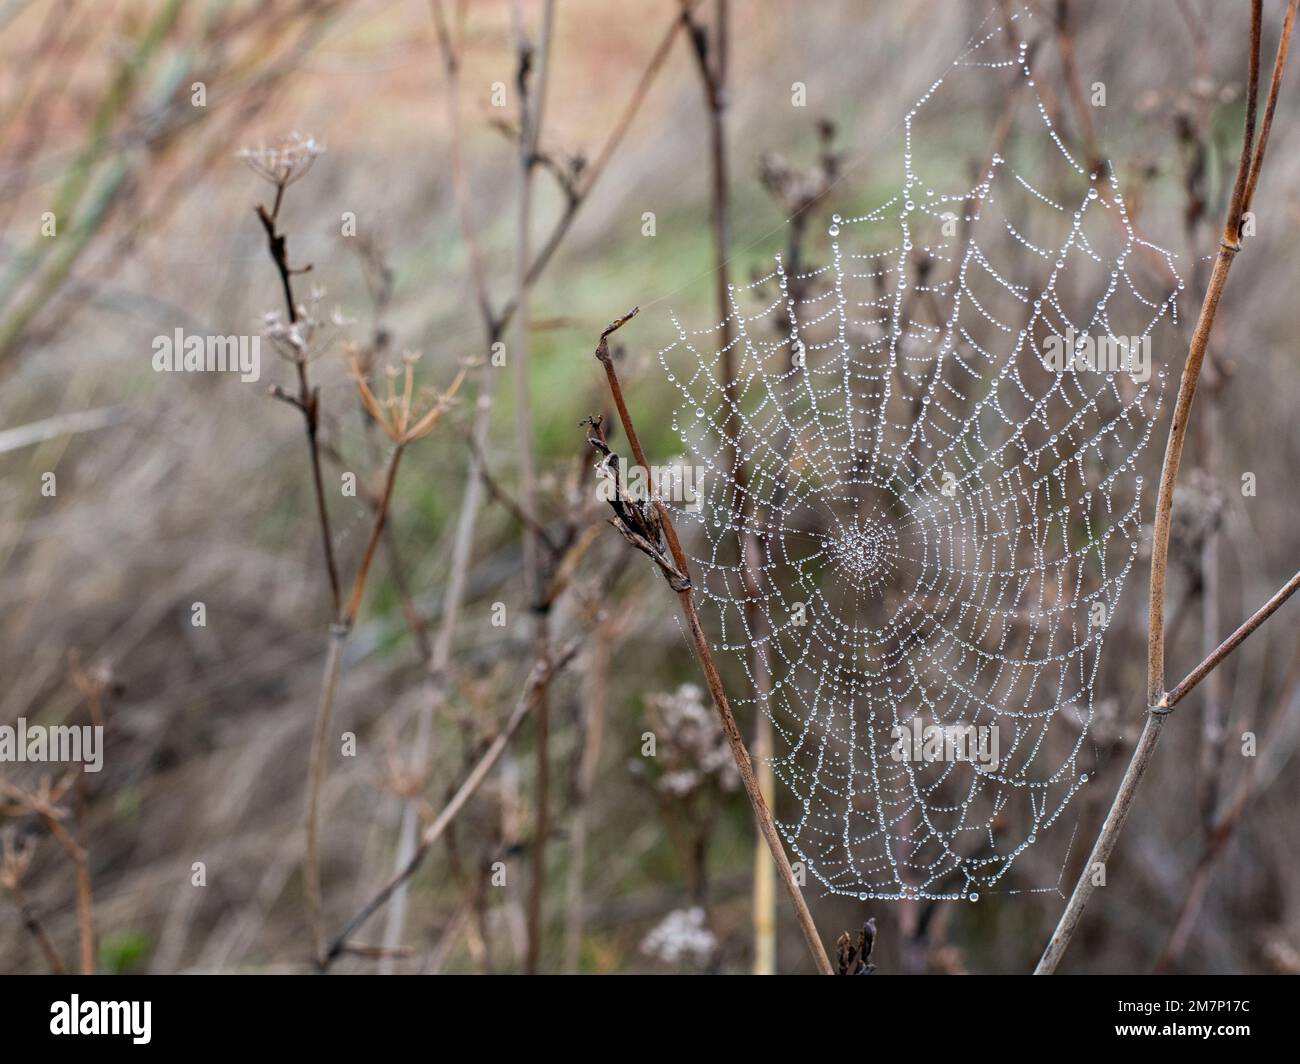 Gotas de agua de Rocío atrapadas en una tela de araña en una mañana fría de invierno Stockfoto